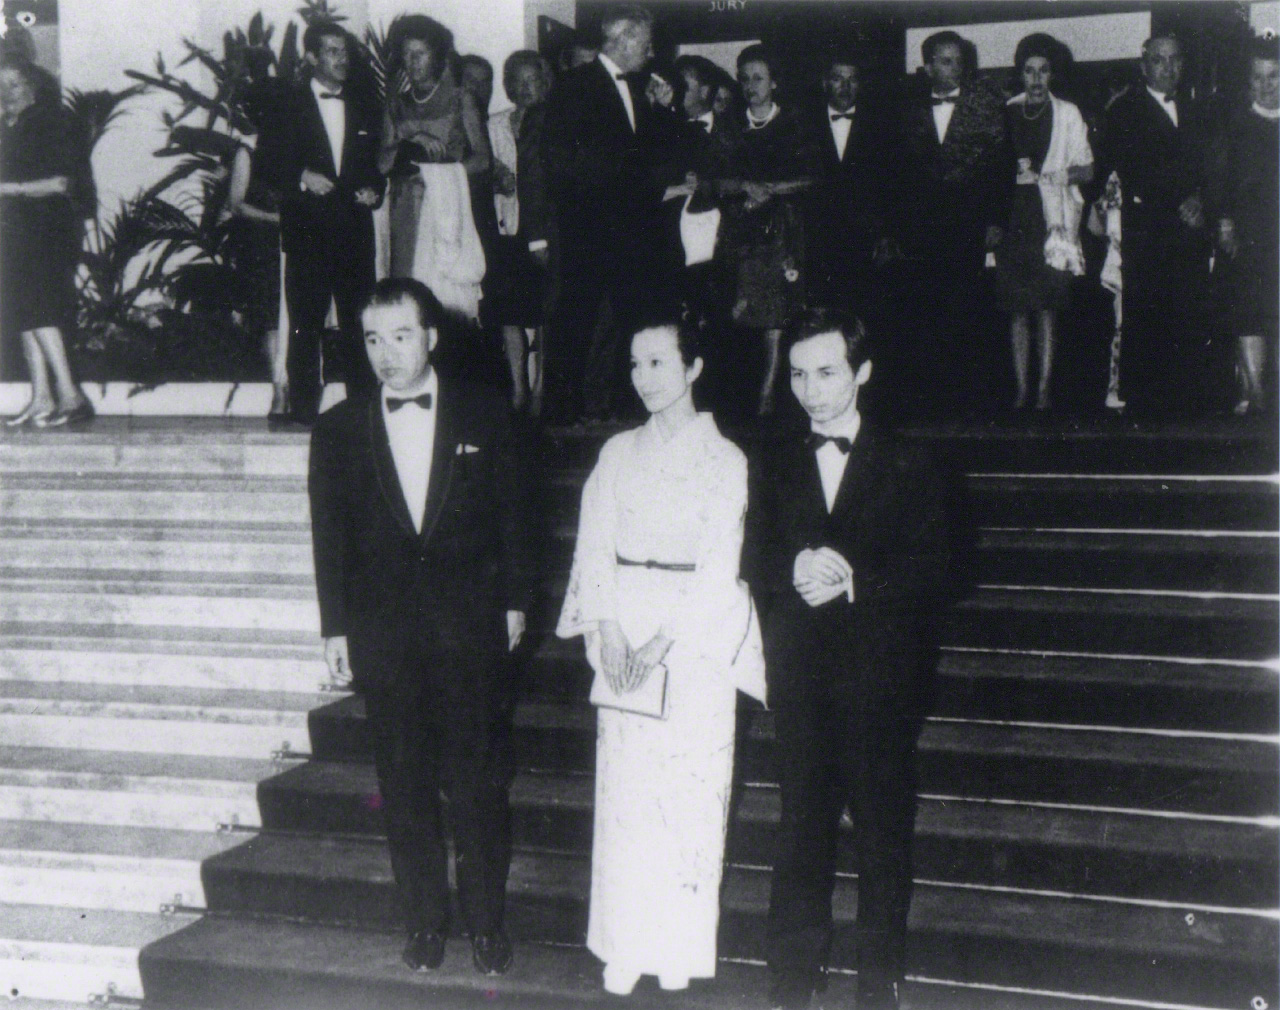 En mayo de 1965 la película Kwaidan recibió el Premio Especial del Jurado en el Festival de Cannes. En la fotografía, Takemitsu, autor de la banda sonora, posa para los fotógrafos junto al director de la película, Kobayashi Masaki (izquierda), y su protagonista, Aratama Michiyo.